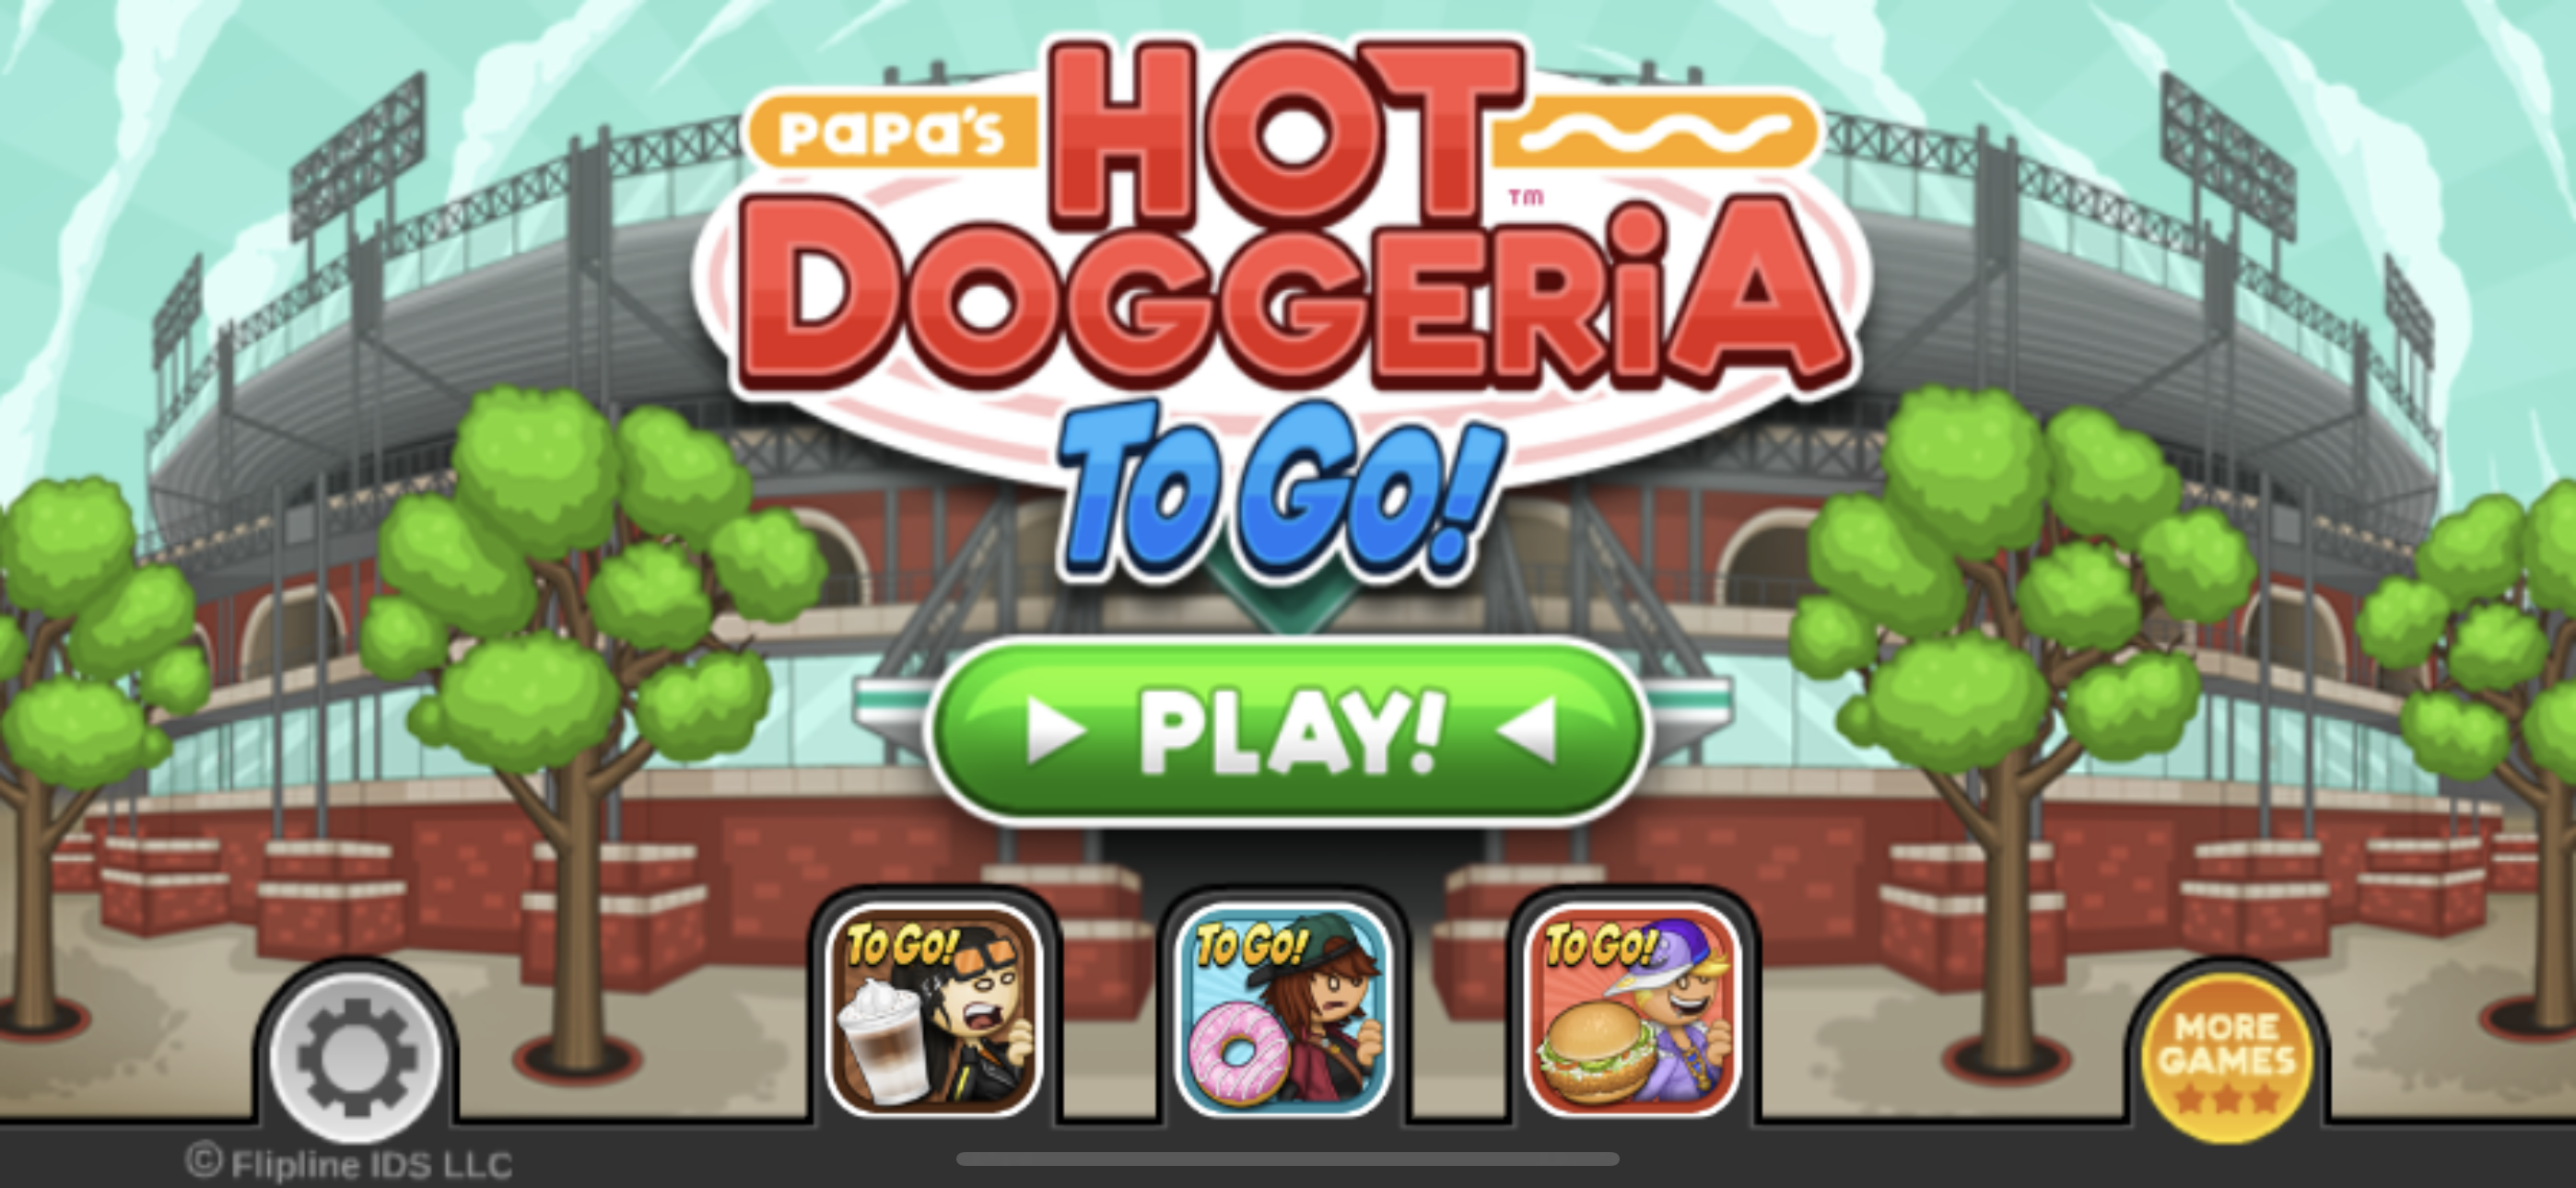 Papa's Hot Doggeria, License